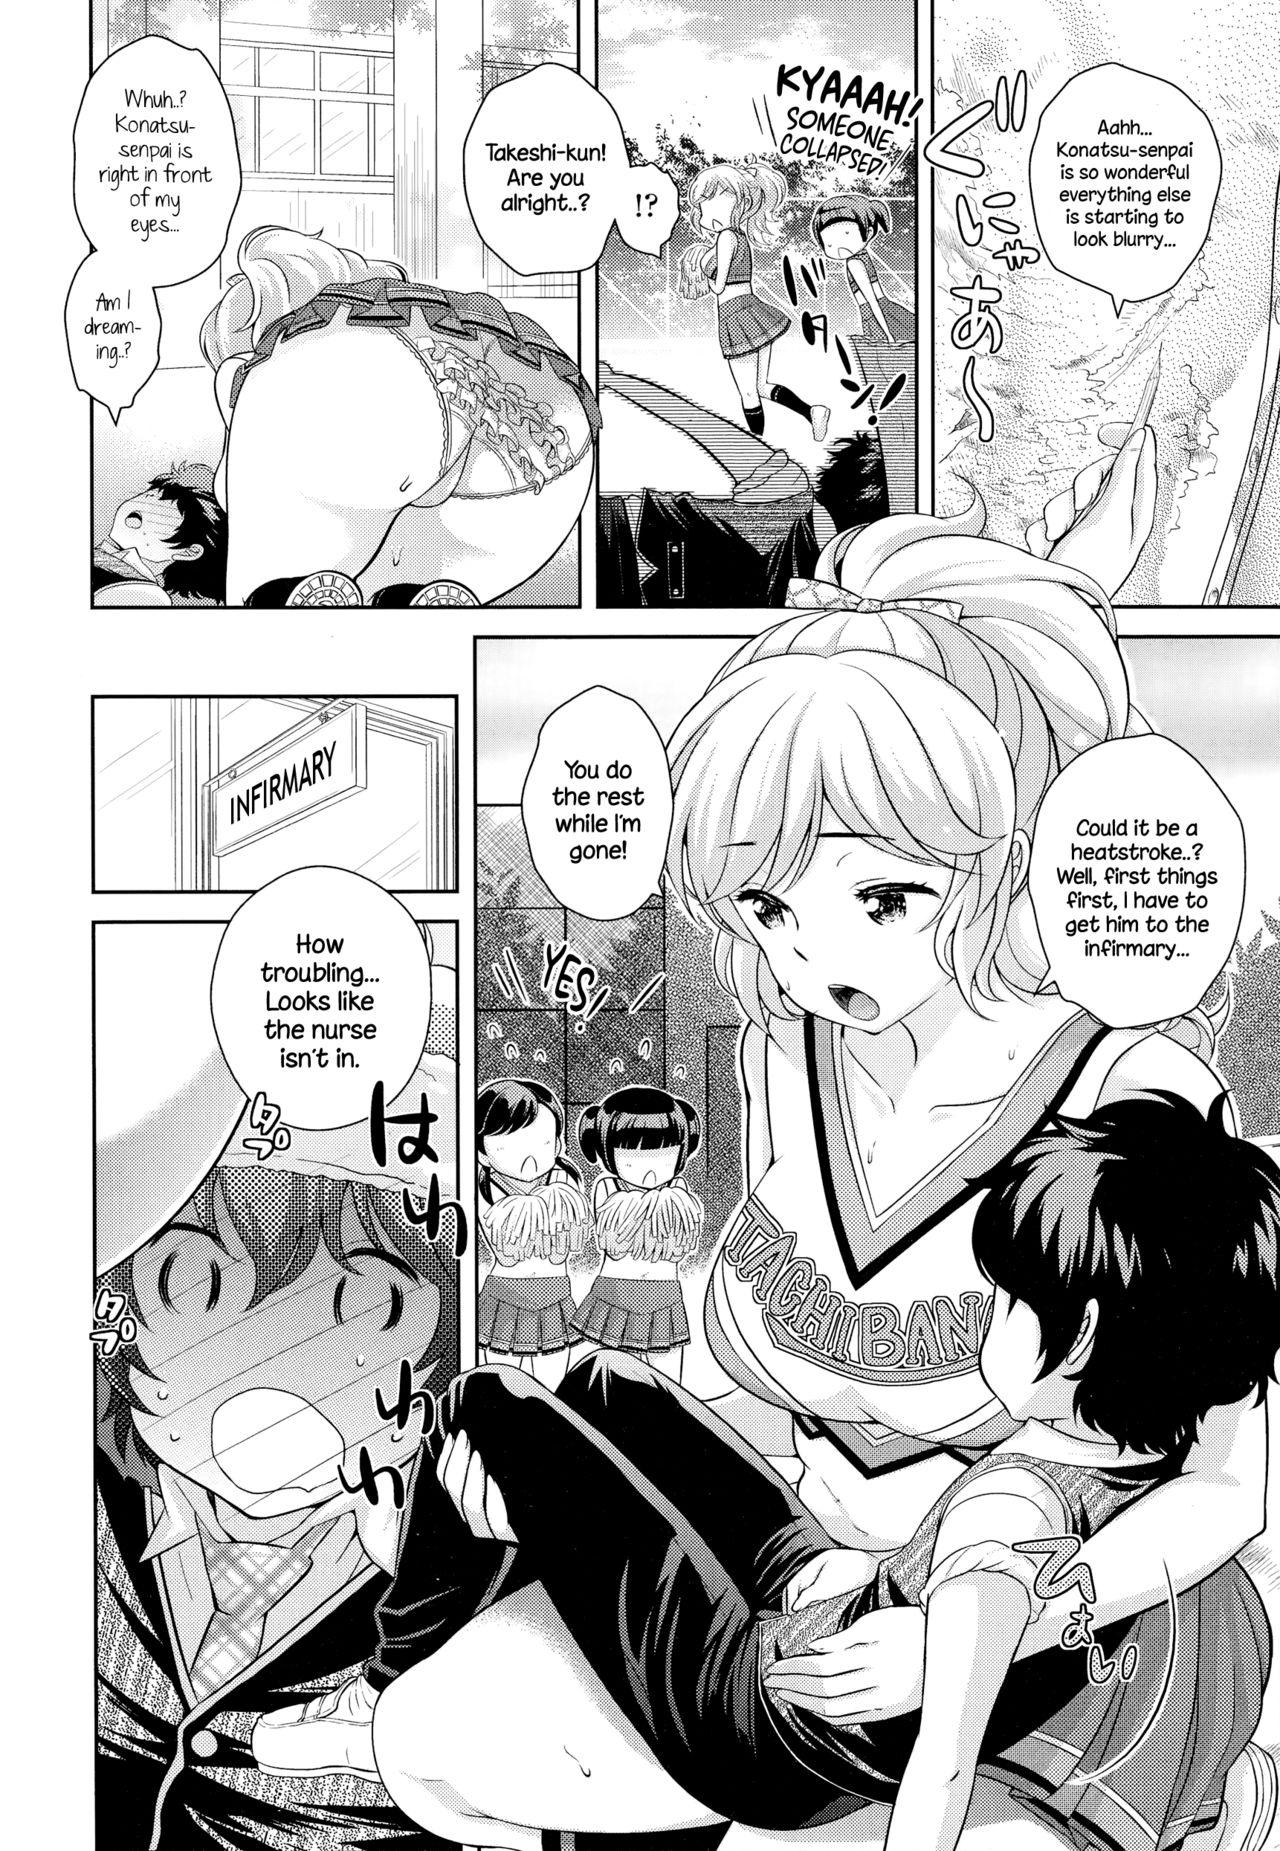 Titten Boku no Konatsu-senpai Car - Page 2